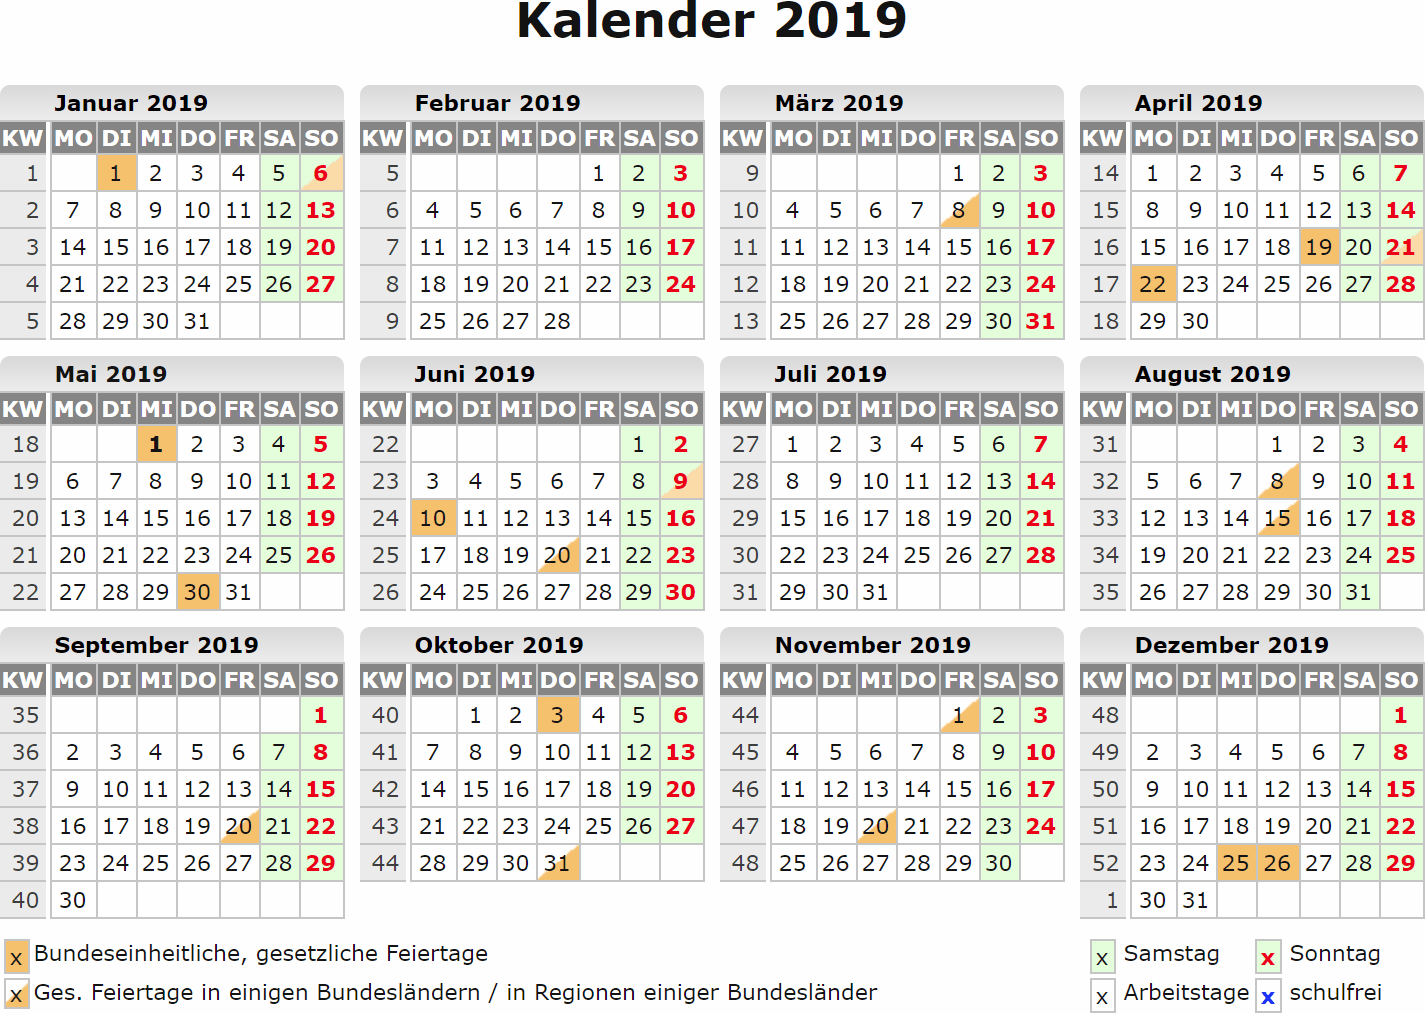 Kalender 2019 VNR43 - TLYP